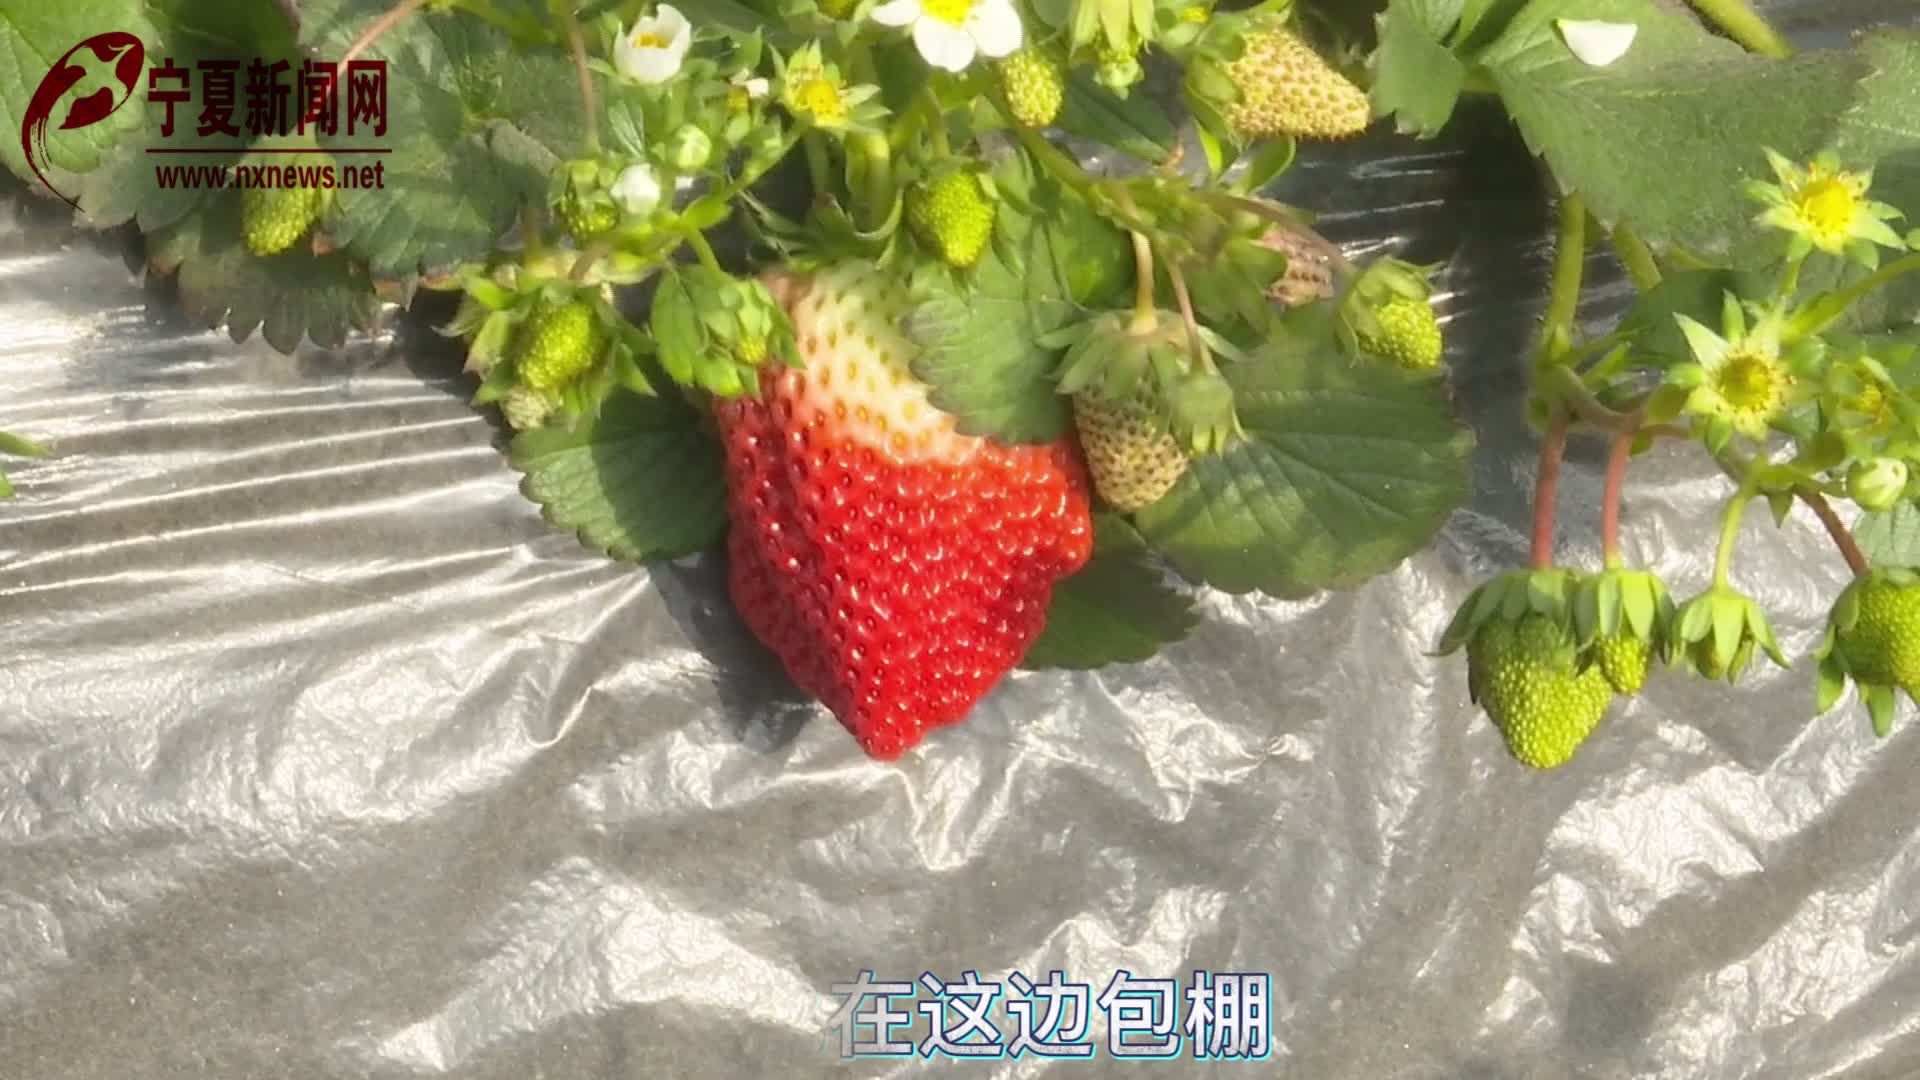 银川市金凤区良田镇：不负冬日好时光 乐享甜“莓”好生活